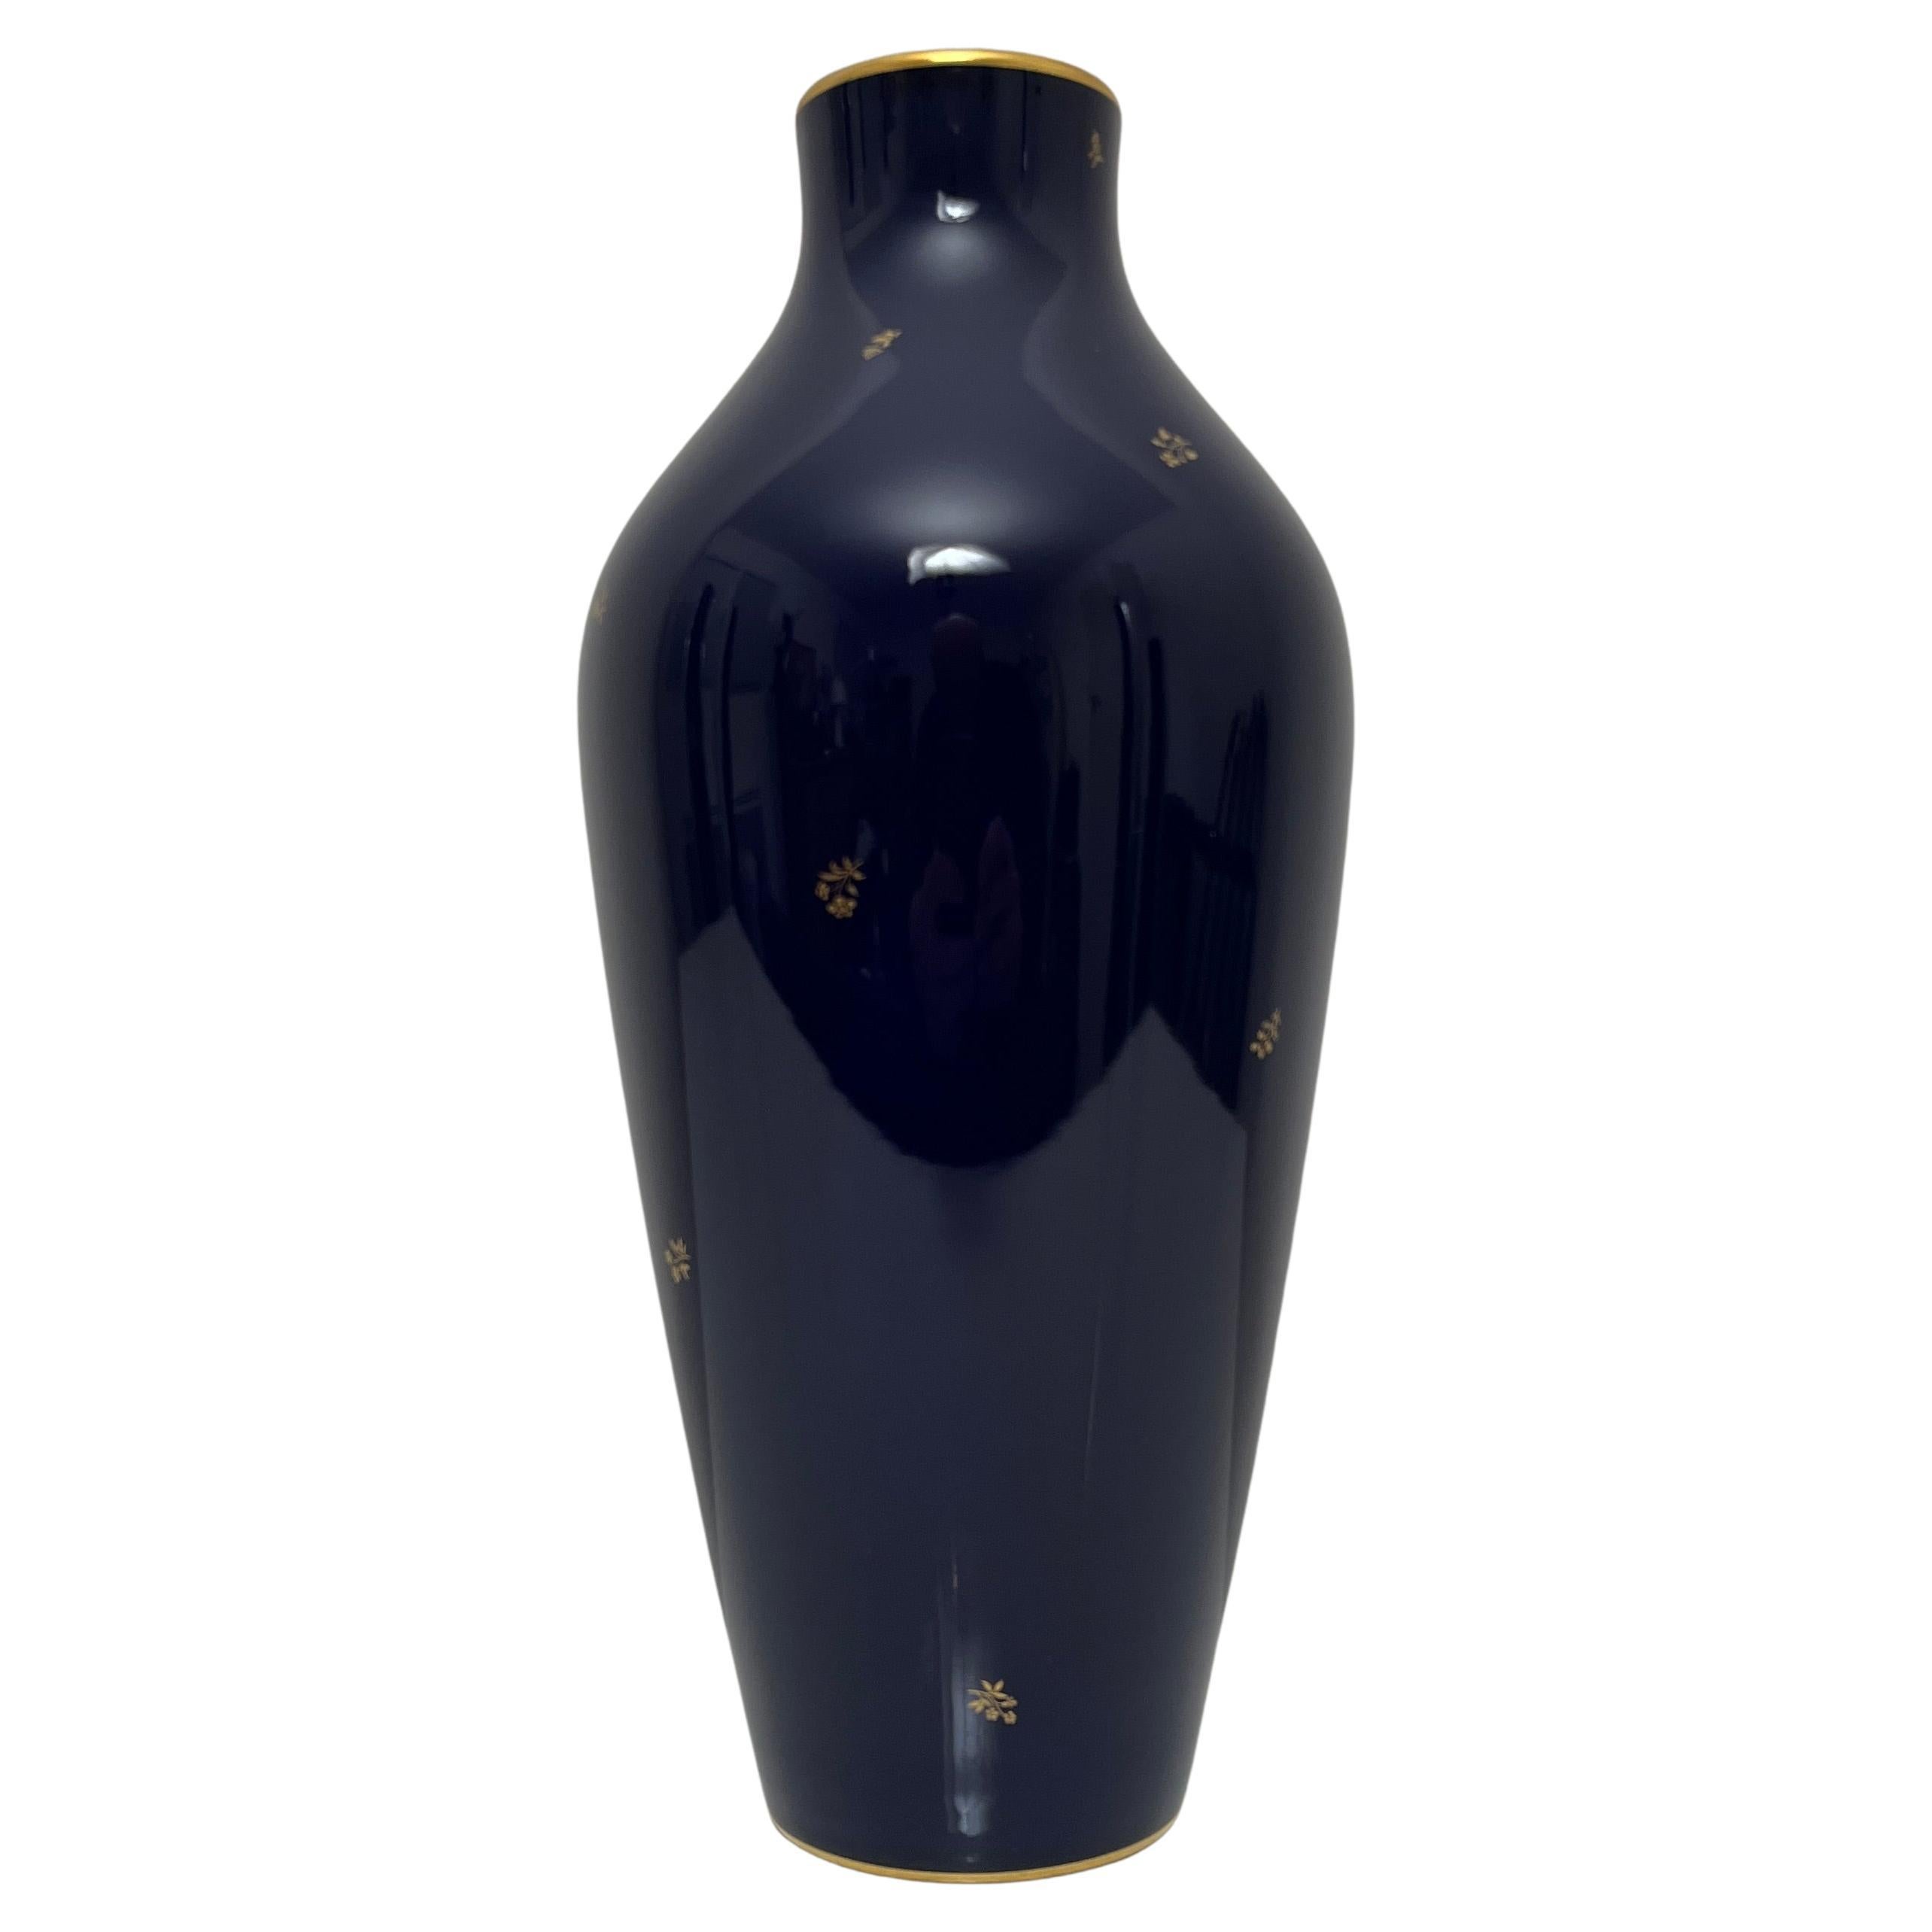 What is a Sèvres vase?